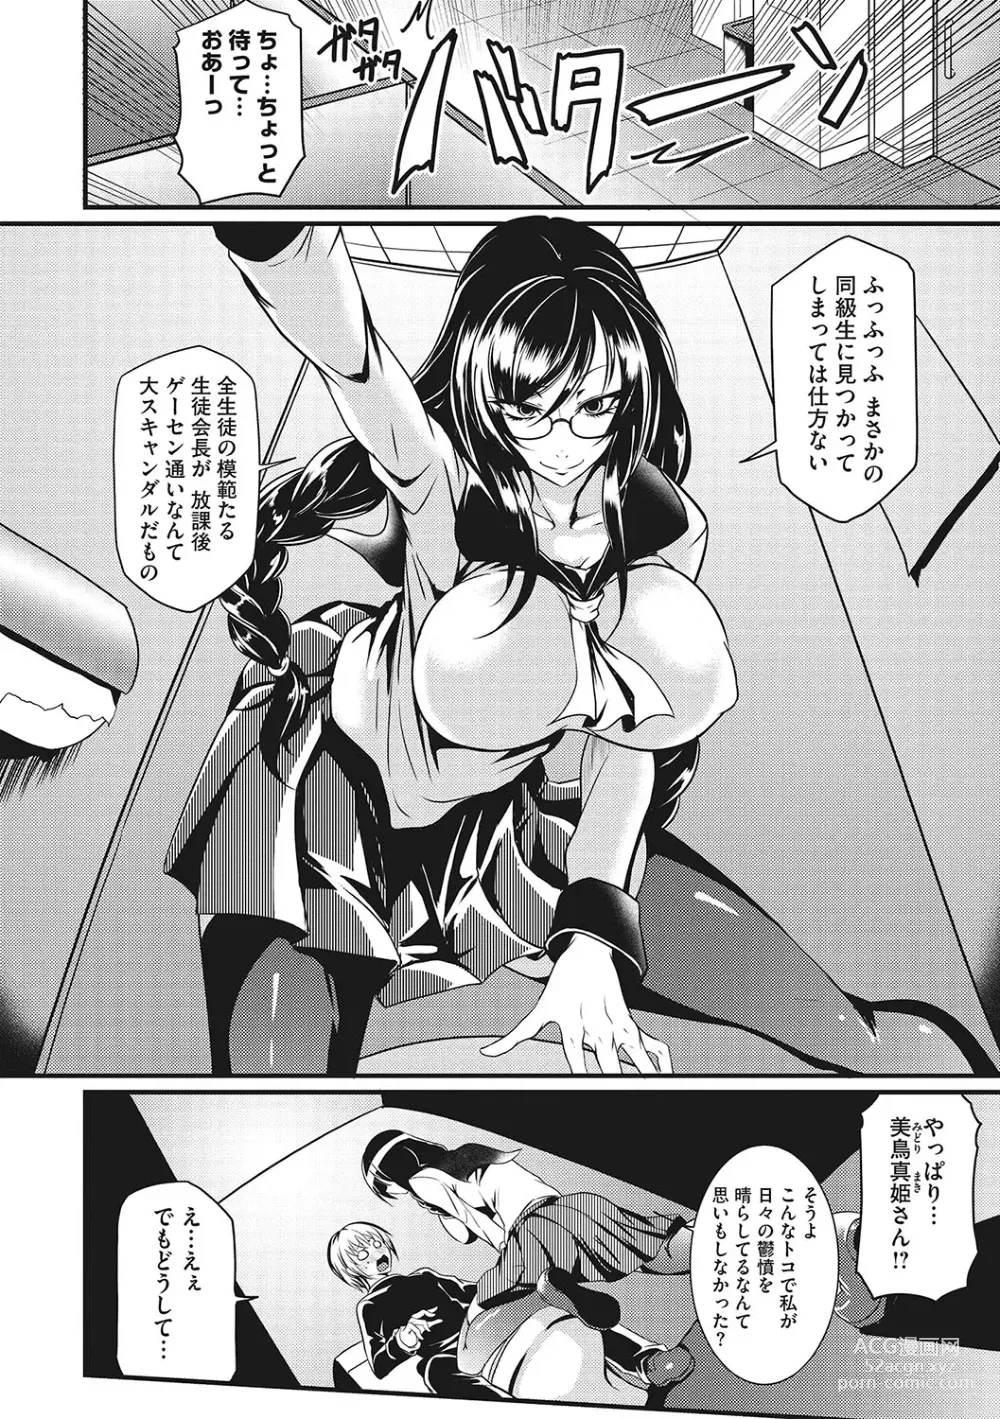 Page 7 of manga Sanpai Shoujo